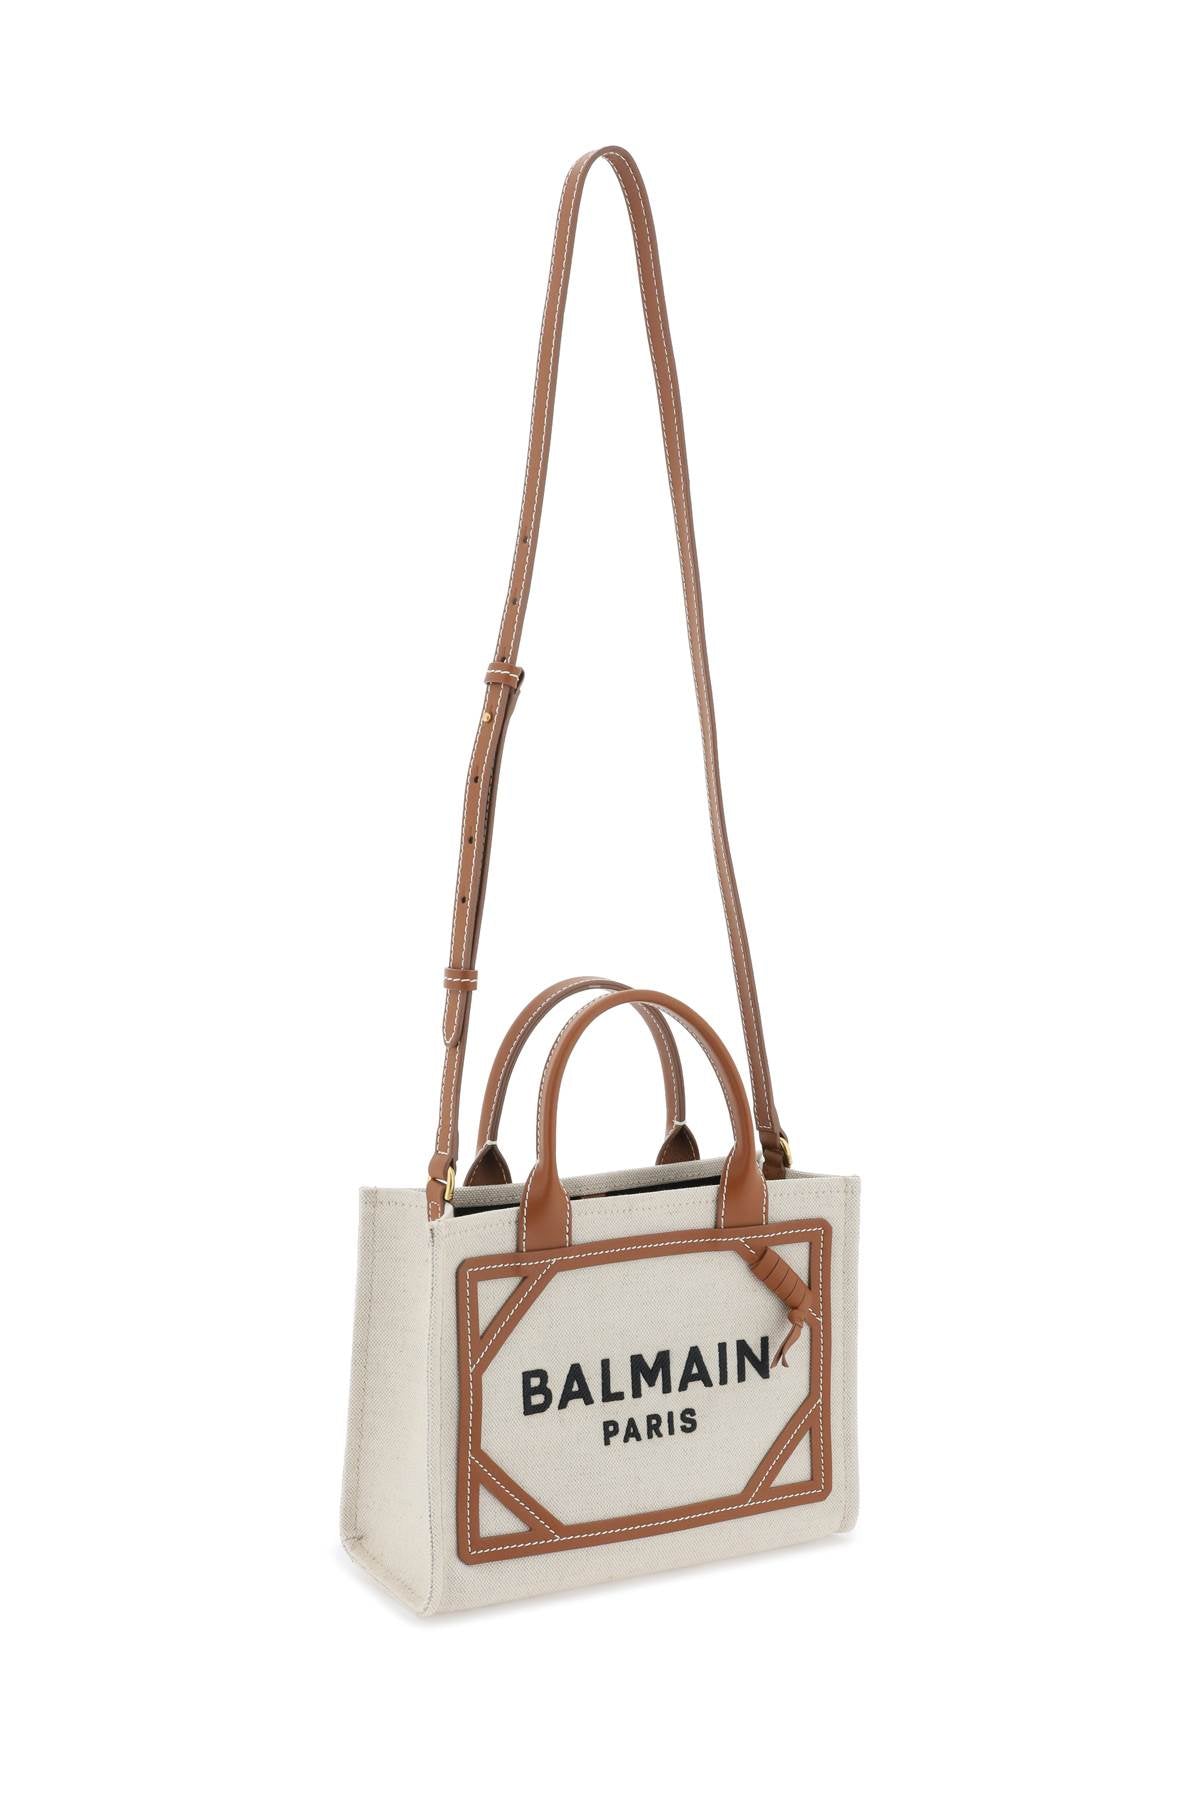 Balmain B-Army Cotton Canvas Tote Bag Cream